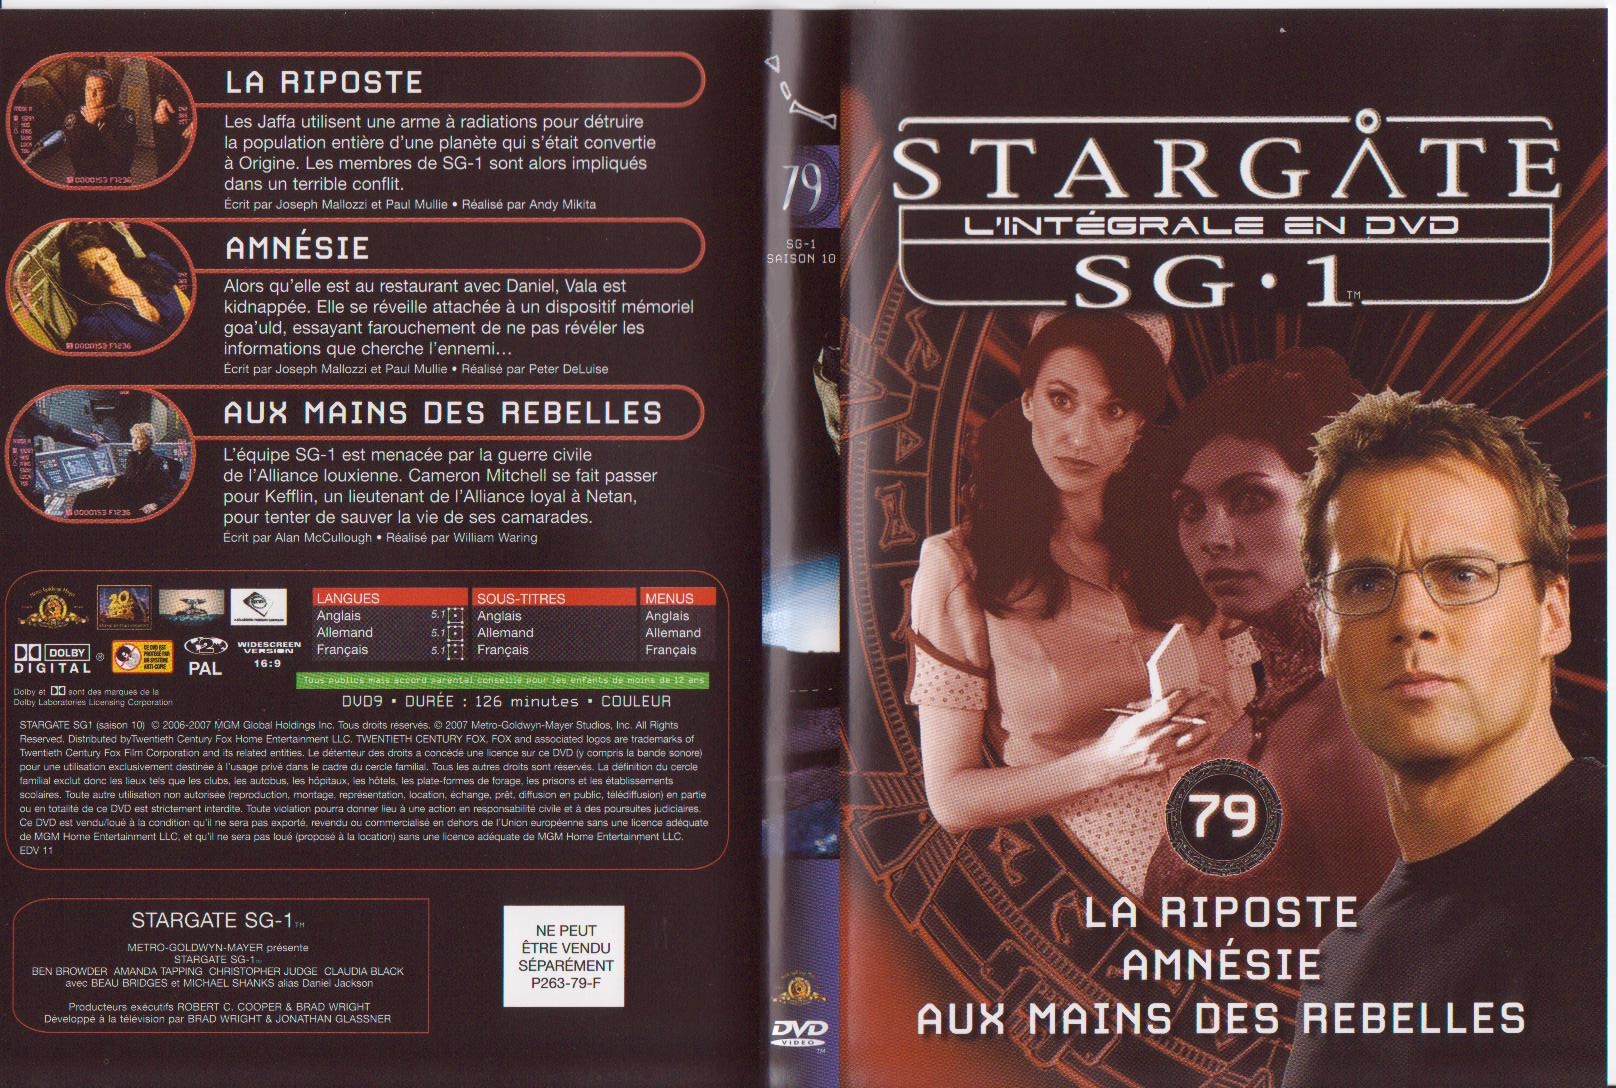 Jaquette DVD Stargate Saison 10 vol 79